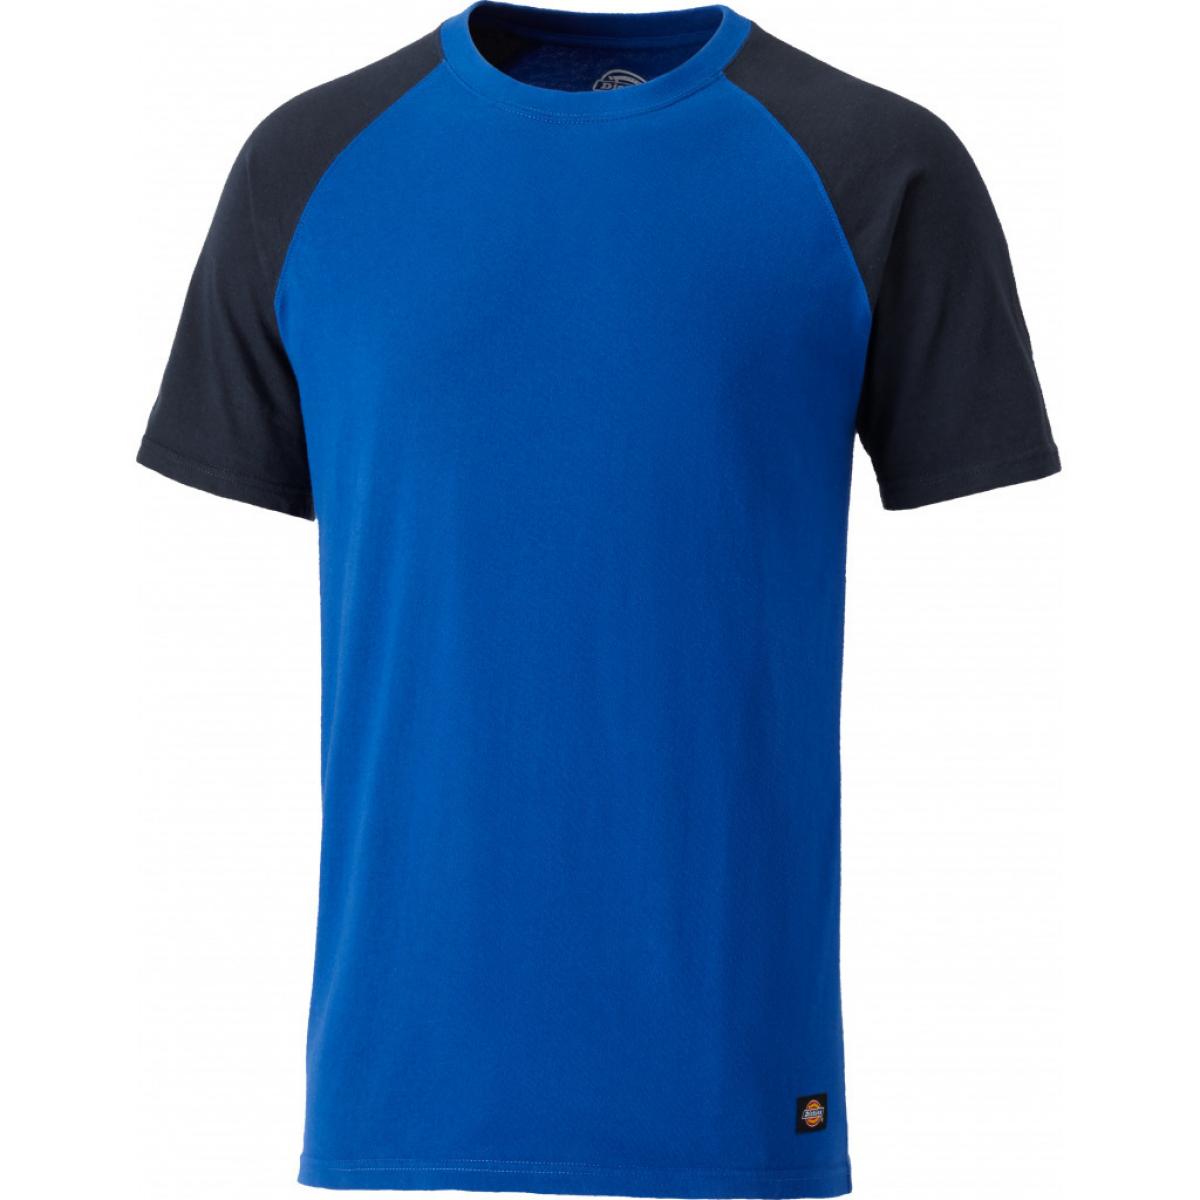 Hersteller: Dickies Herstellernummer: SH2007 Artikelbezeichnung: Zweifarbiges T-Shirt Farbe: Königsblau/Marineblau